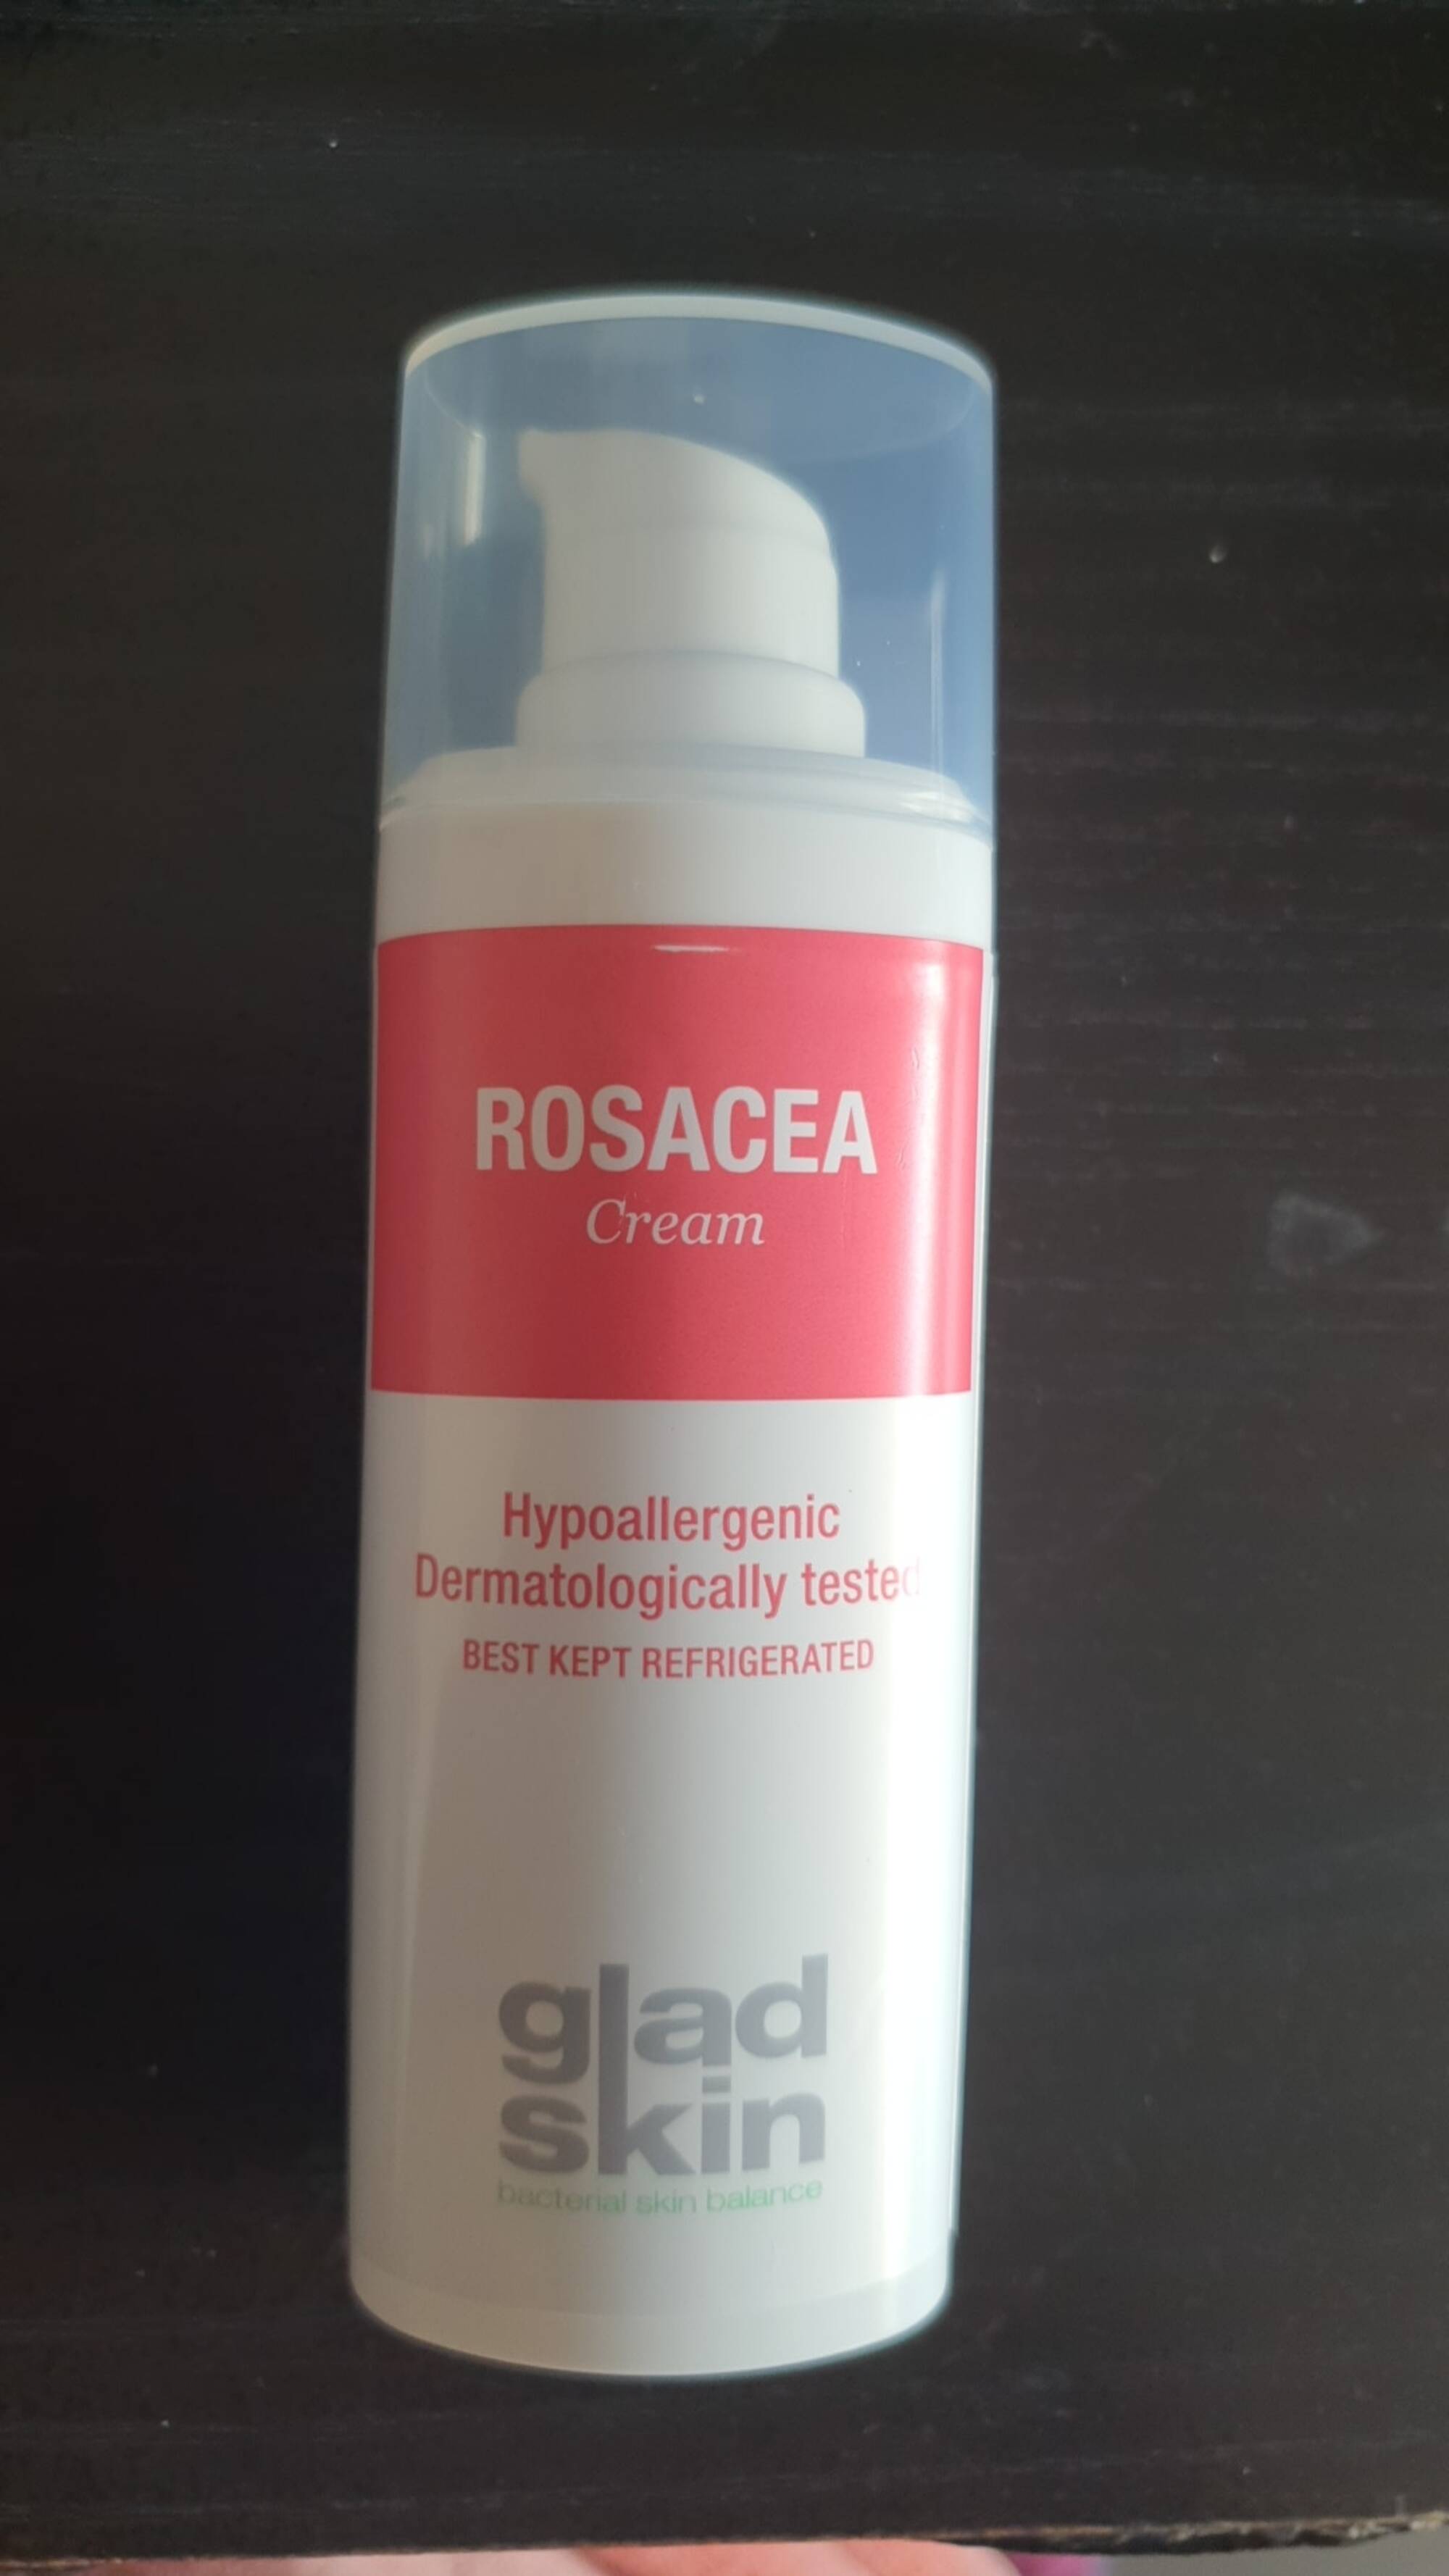 GLADSKIN - Rosacea - Cream